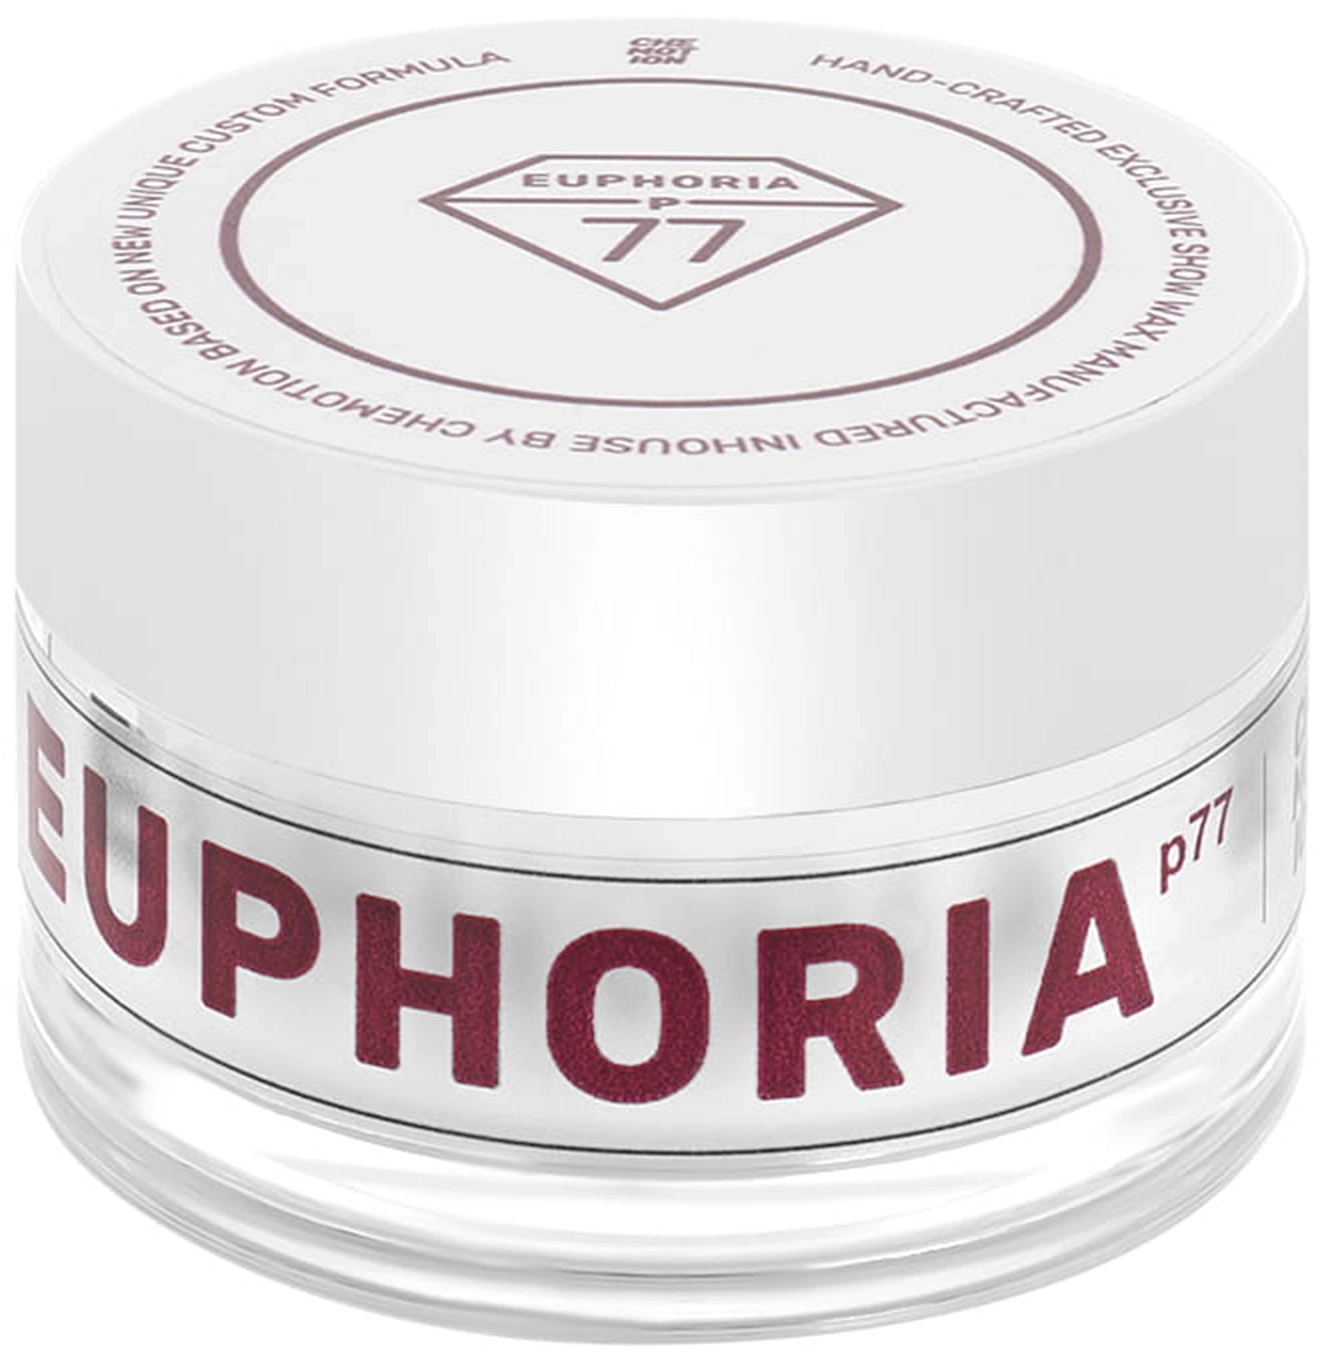 Image of Chemotion EUPHORIA p77 – hybrydowy wosk, konkursowy wygląd 120g